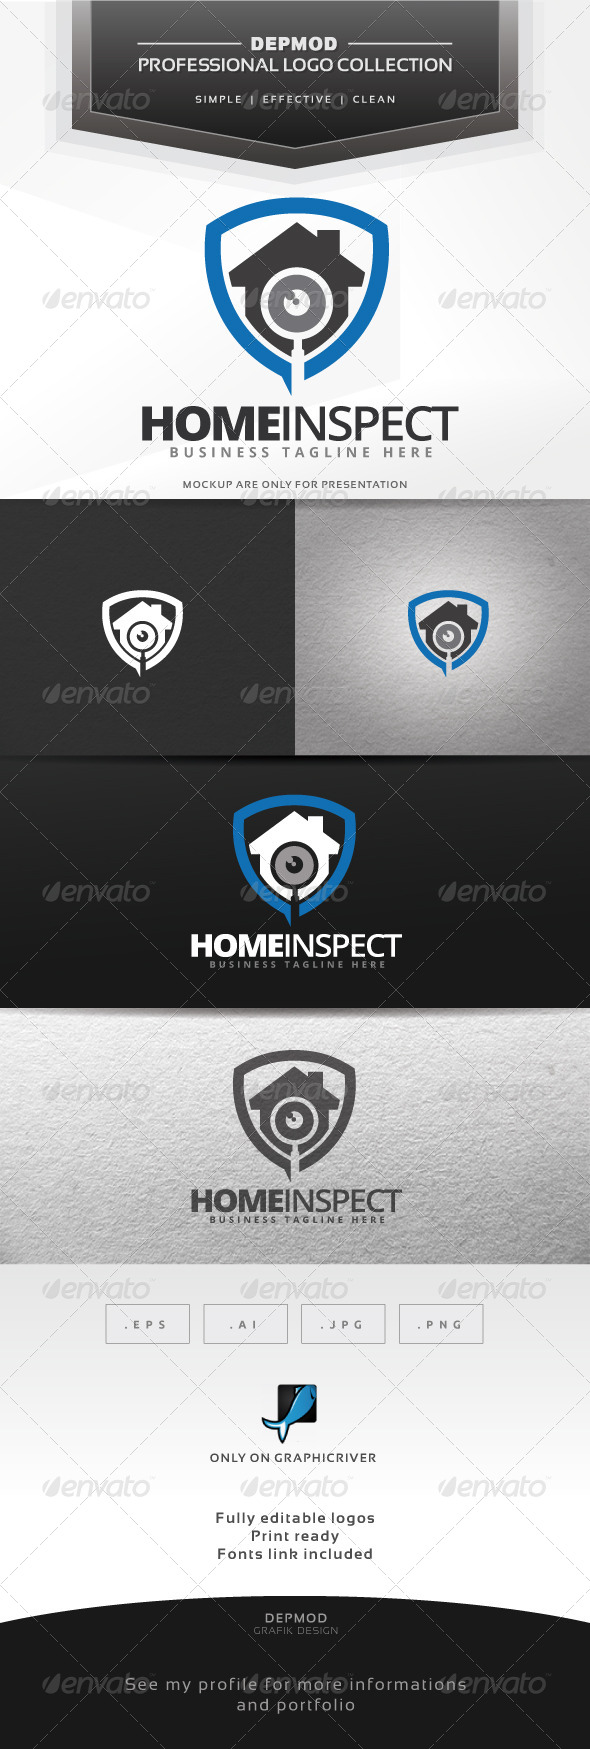 Home Inspect Logo